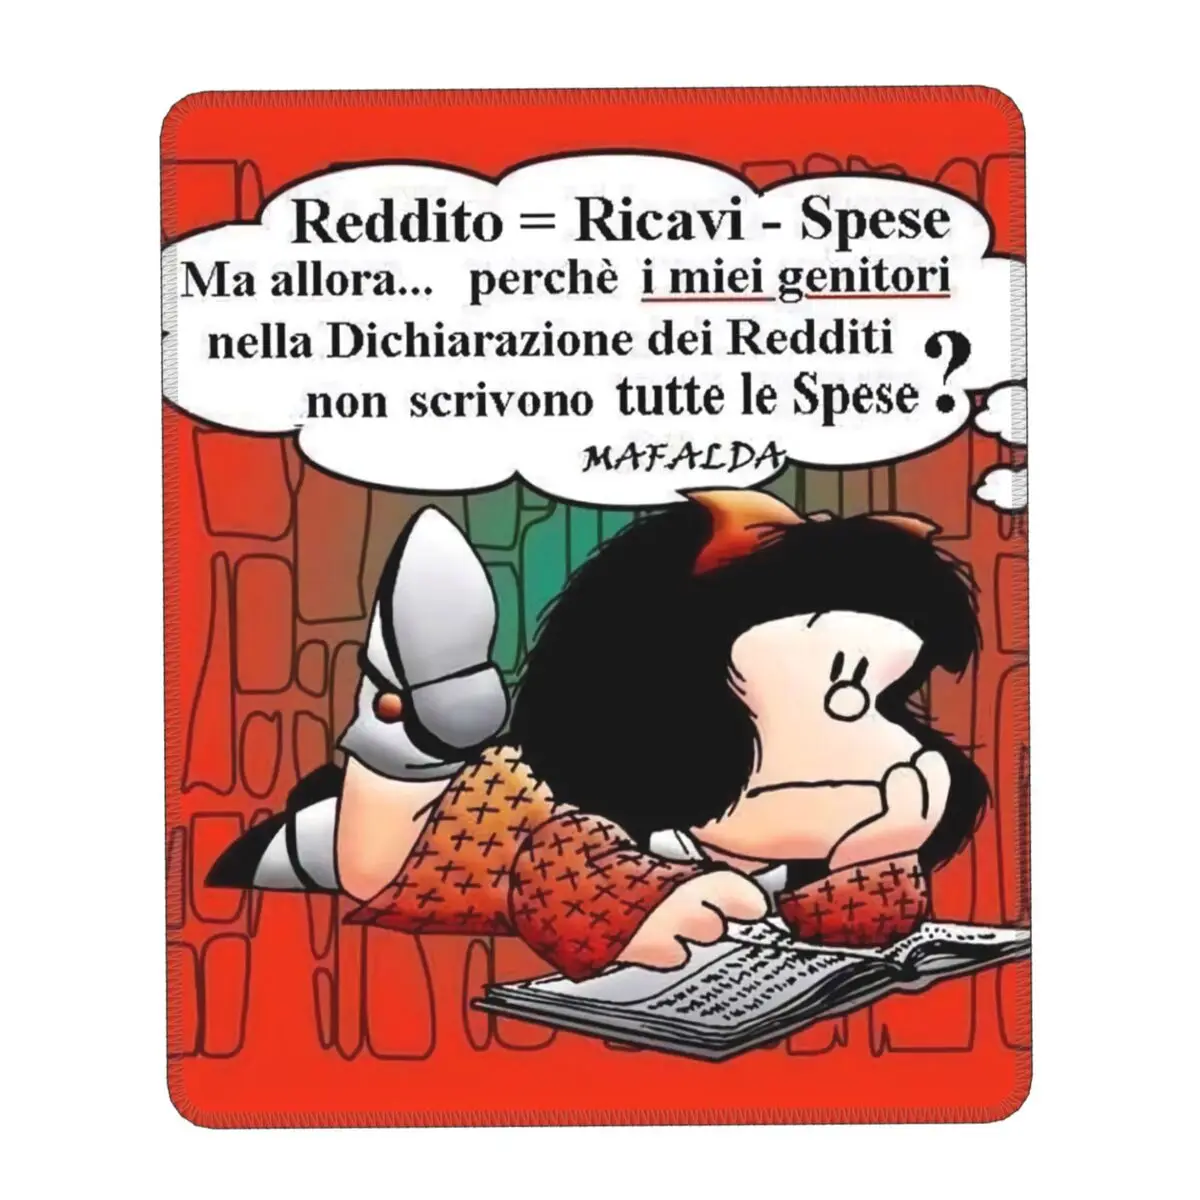 Коврик для мыши Quino Comic Cartoon Mafalda с нескользящим резиновым основанием, персонализированный игровой коврик для мыши, аксессуары для офисного ПК-стола.